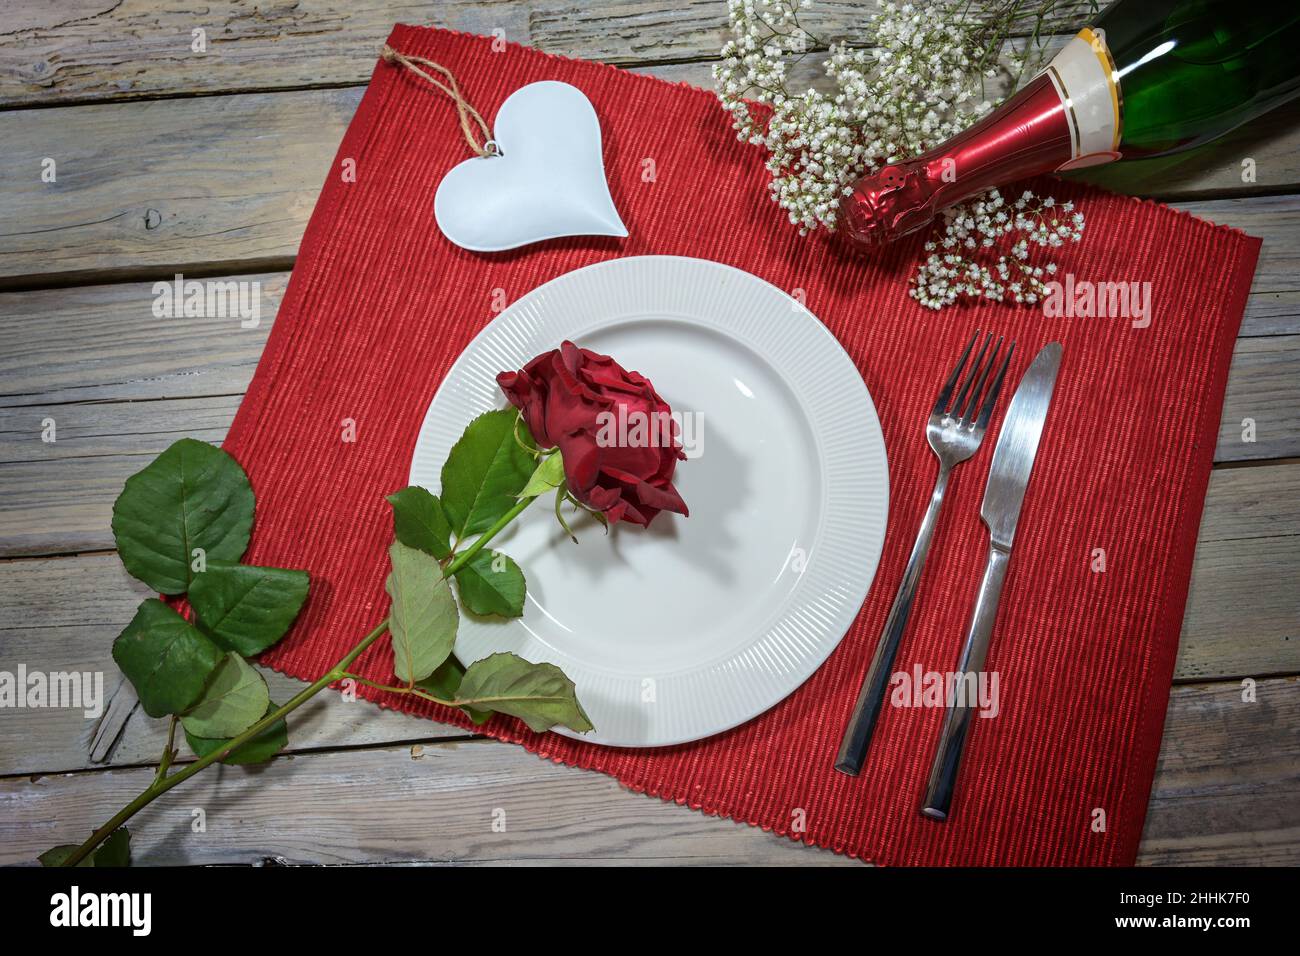 Dîner romantique de Saint Valentin, assiette blanche avec une rose rouge, en forme de coeur et une bouteille de champagne sur une serviette et une table rustique en bois, concept d'amour, h Banque D'Images